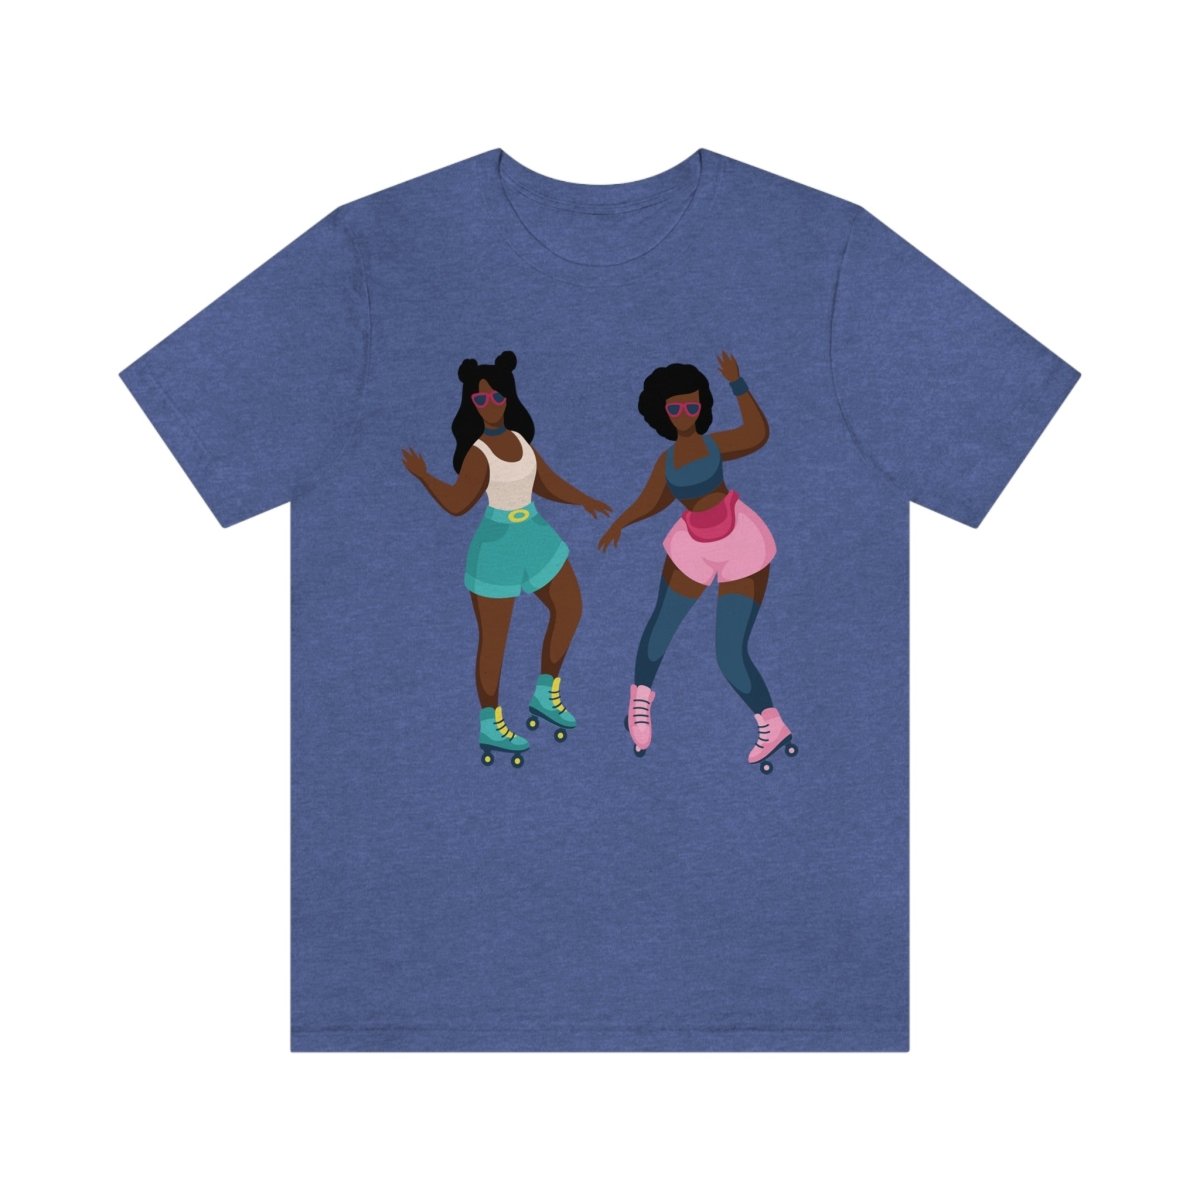 Roller Skate Girls Shirt - The Trini Gee